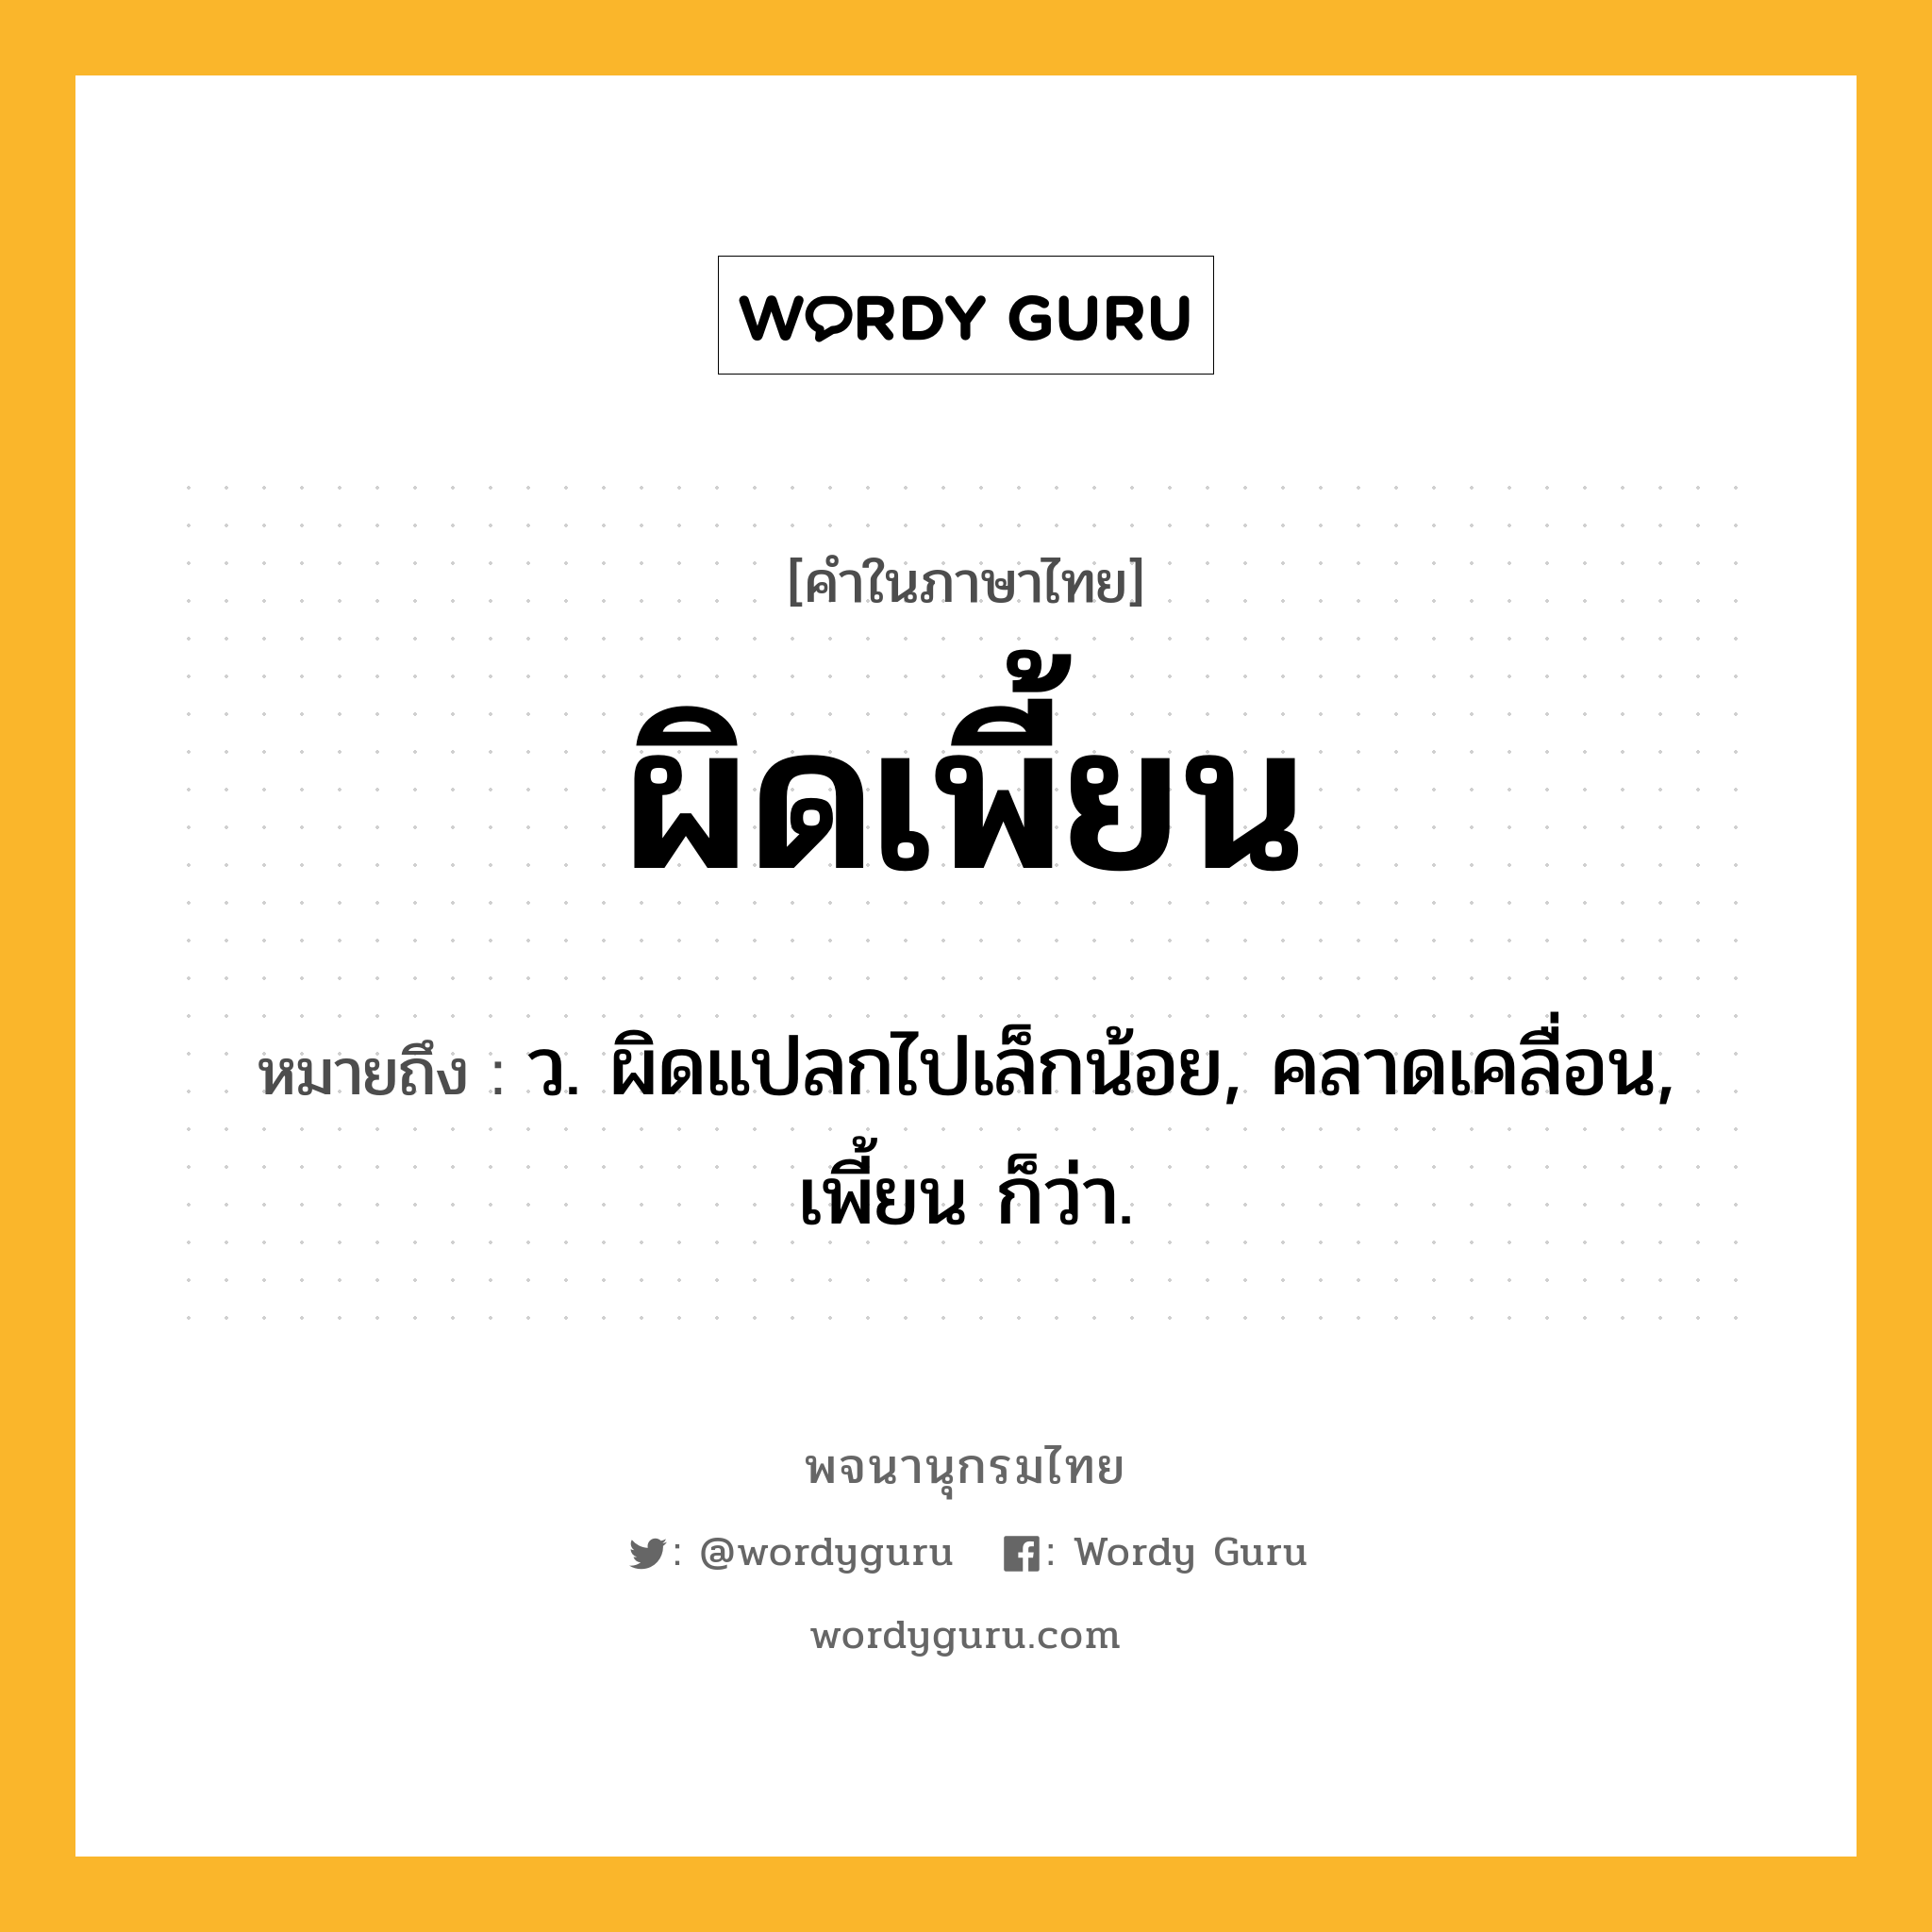 ผิดเพี้ยน หมายถึงอะไร?, คำในภาษาไทย ผิดเพี้ยน หมายถึง ว. ผิดแปลกไปเล็กน้อย, คลาดเคลื่อน, เพี้ยน ก็ว่า.